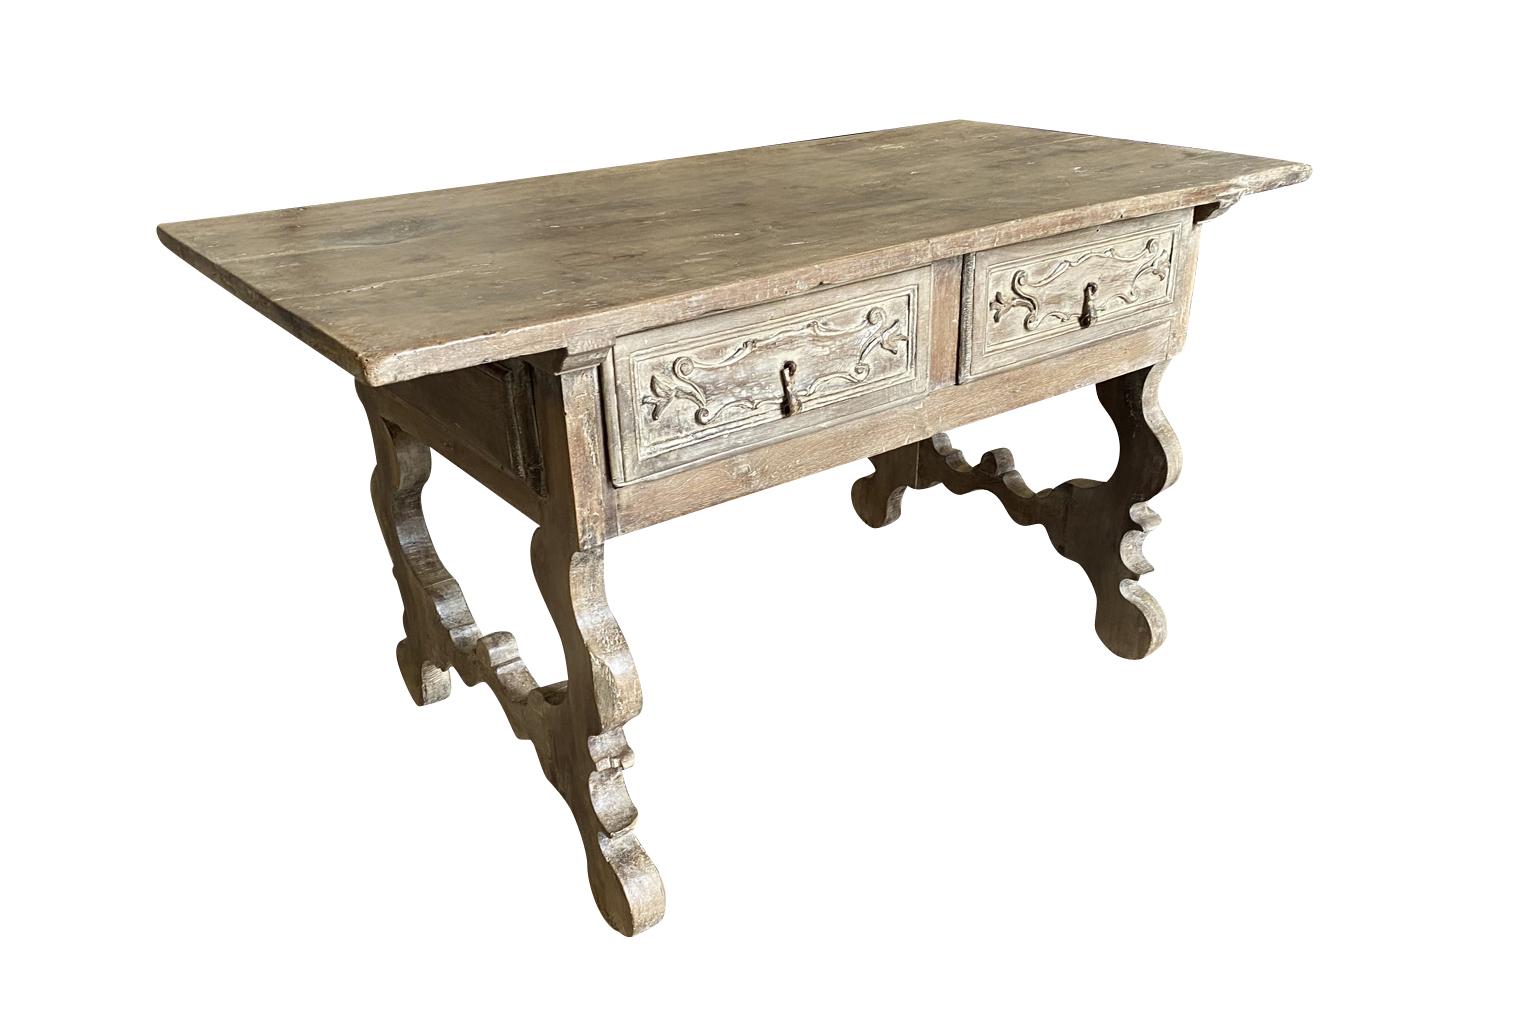 Ein sehr schöner Schreibtisch aus dem 17. Jahrhundert aus der Gegend von Bologna in Italien. Wunderschön aus Nussbaumholz gefertigt, mit zwei Schubladen, klassischen lyraförmigen Beinen und einer massiven Tischplatte. Atemberaubend.